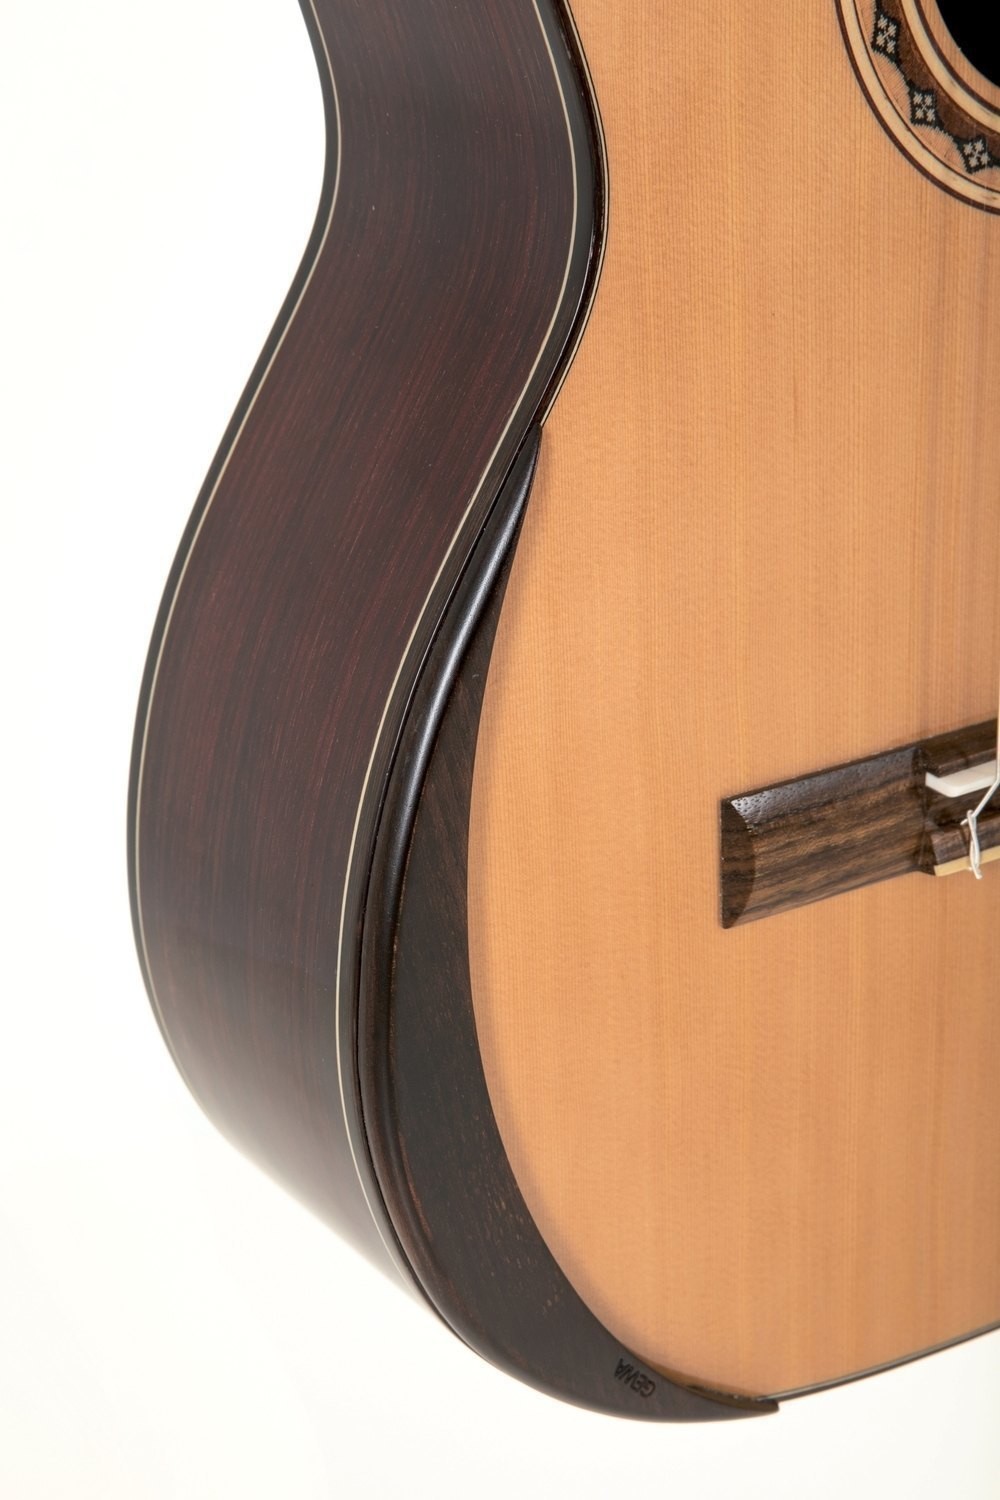 No nulo ZSooner Cejilla para guitarra Plateado aleación de zinc Tamaño libre color plateado